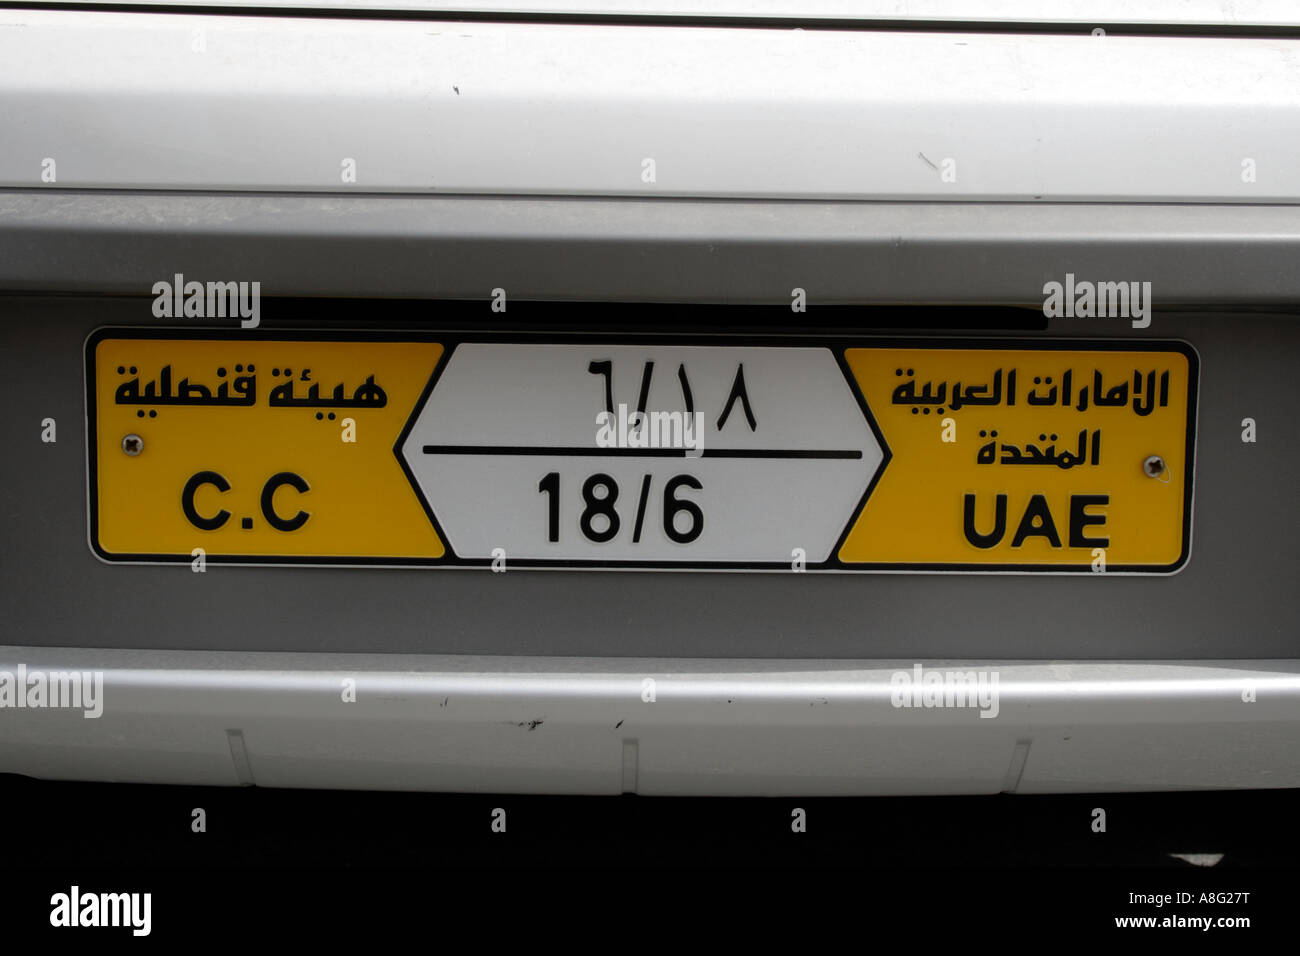 Dubai-CC diplomatischen arabischen Kfz-Kennzeichen von Vereinigte Arabische Emirate. Foto: Willy Matheisl Stockfoto